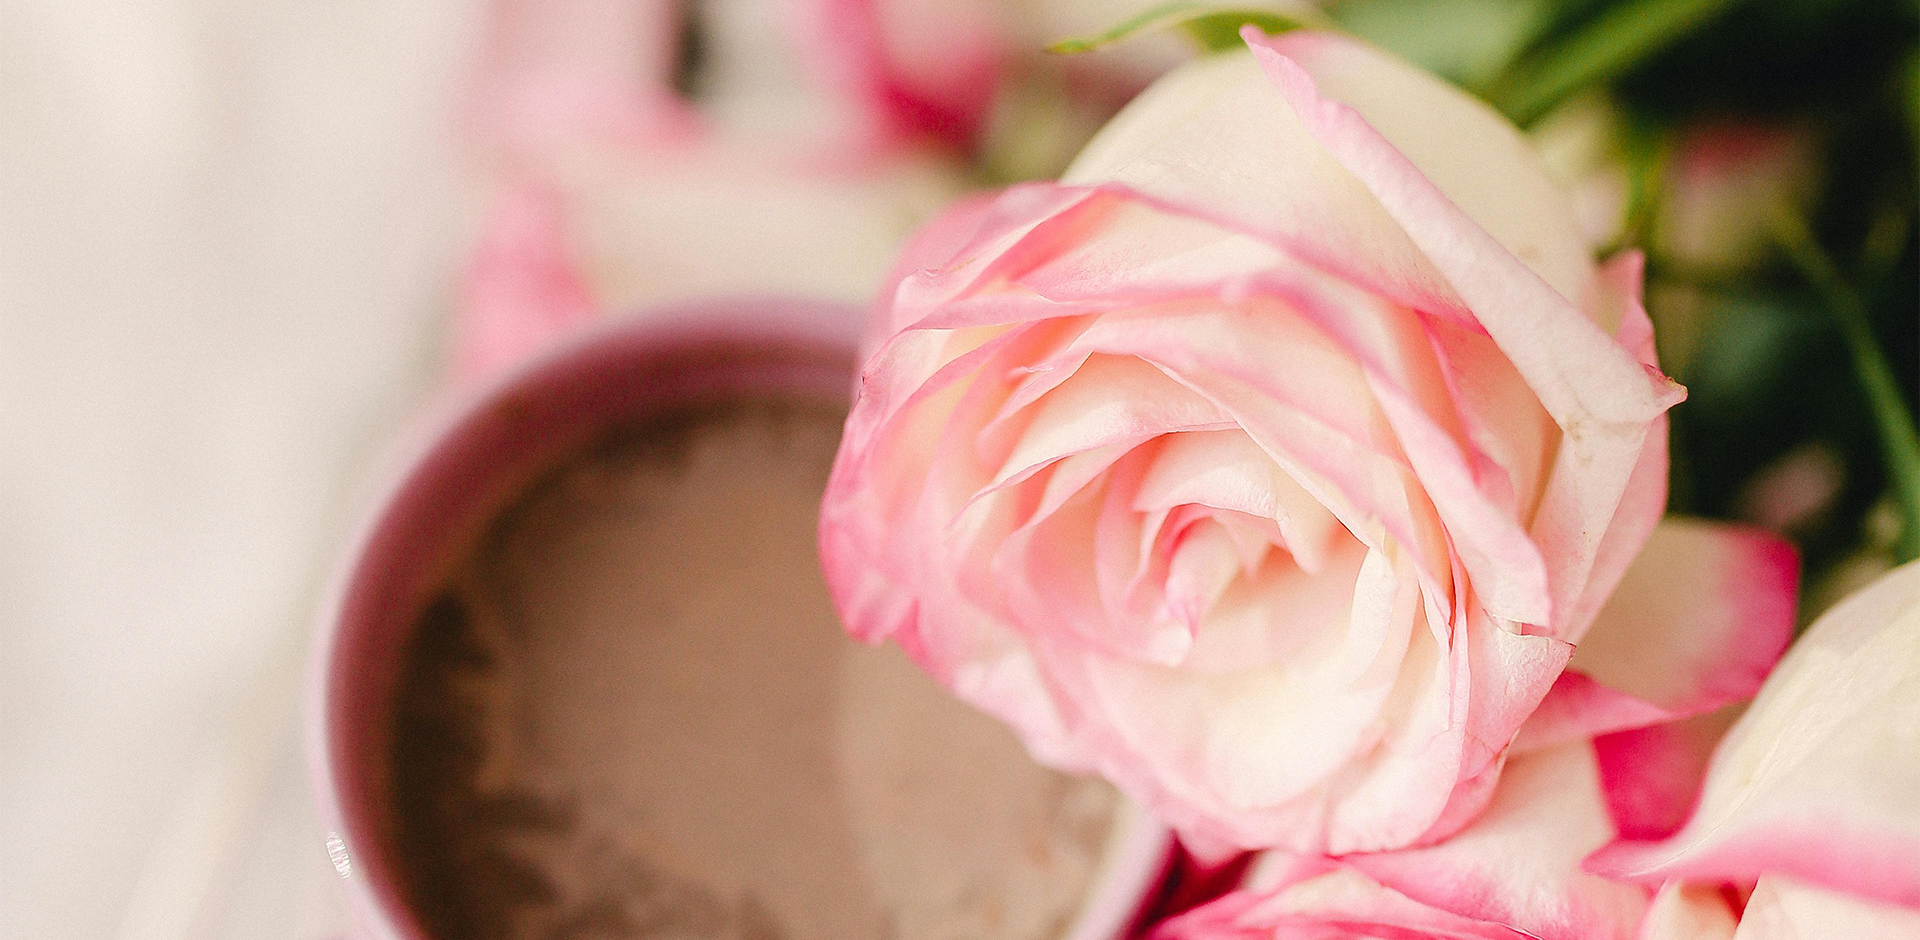 Vaaleanpunainen ruusu ja taustalla kahvikuppi.